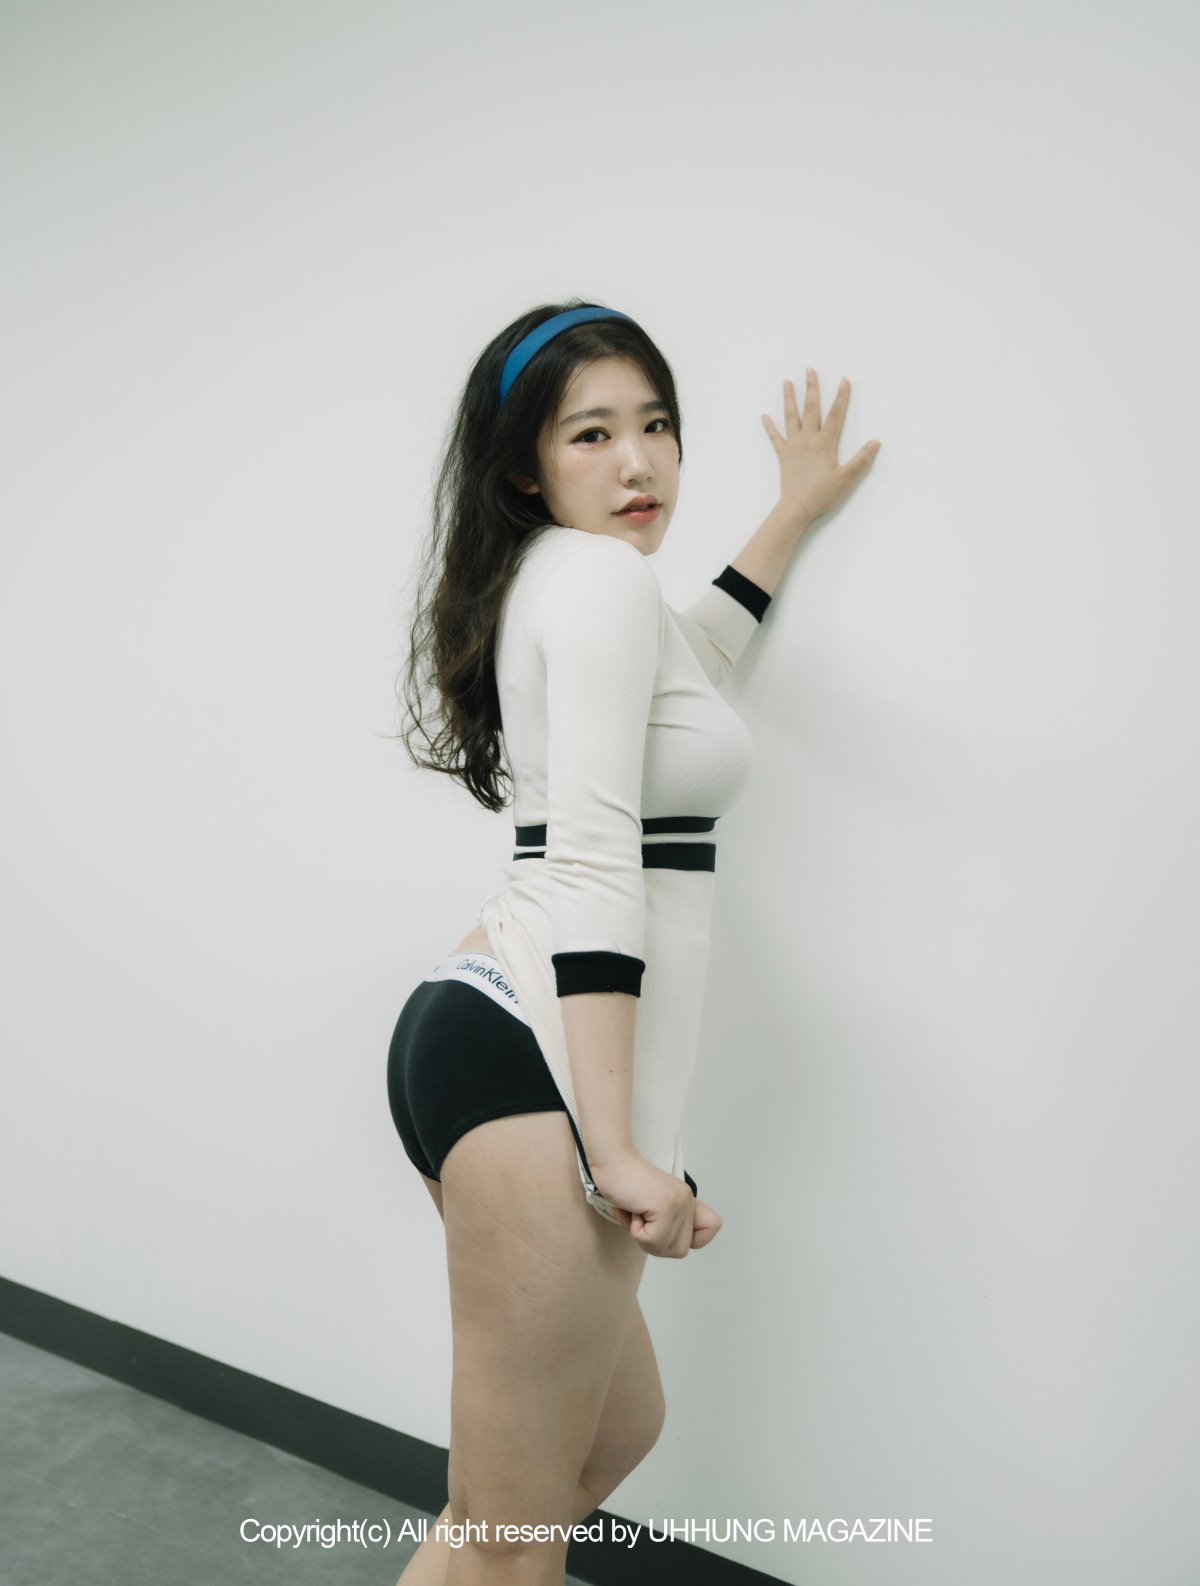 UHHUNG MAGAZINE Jenn Vol 1 Taekwondo Part1 0005 3697021742.jpg